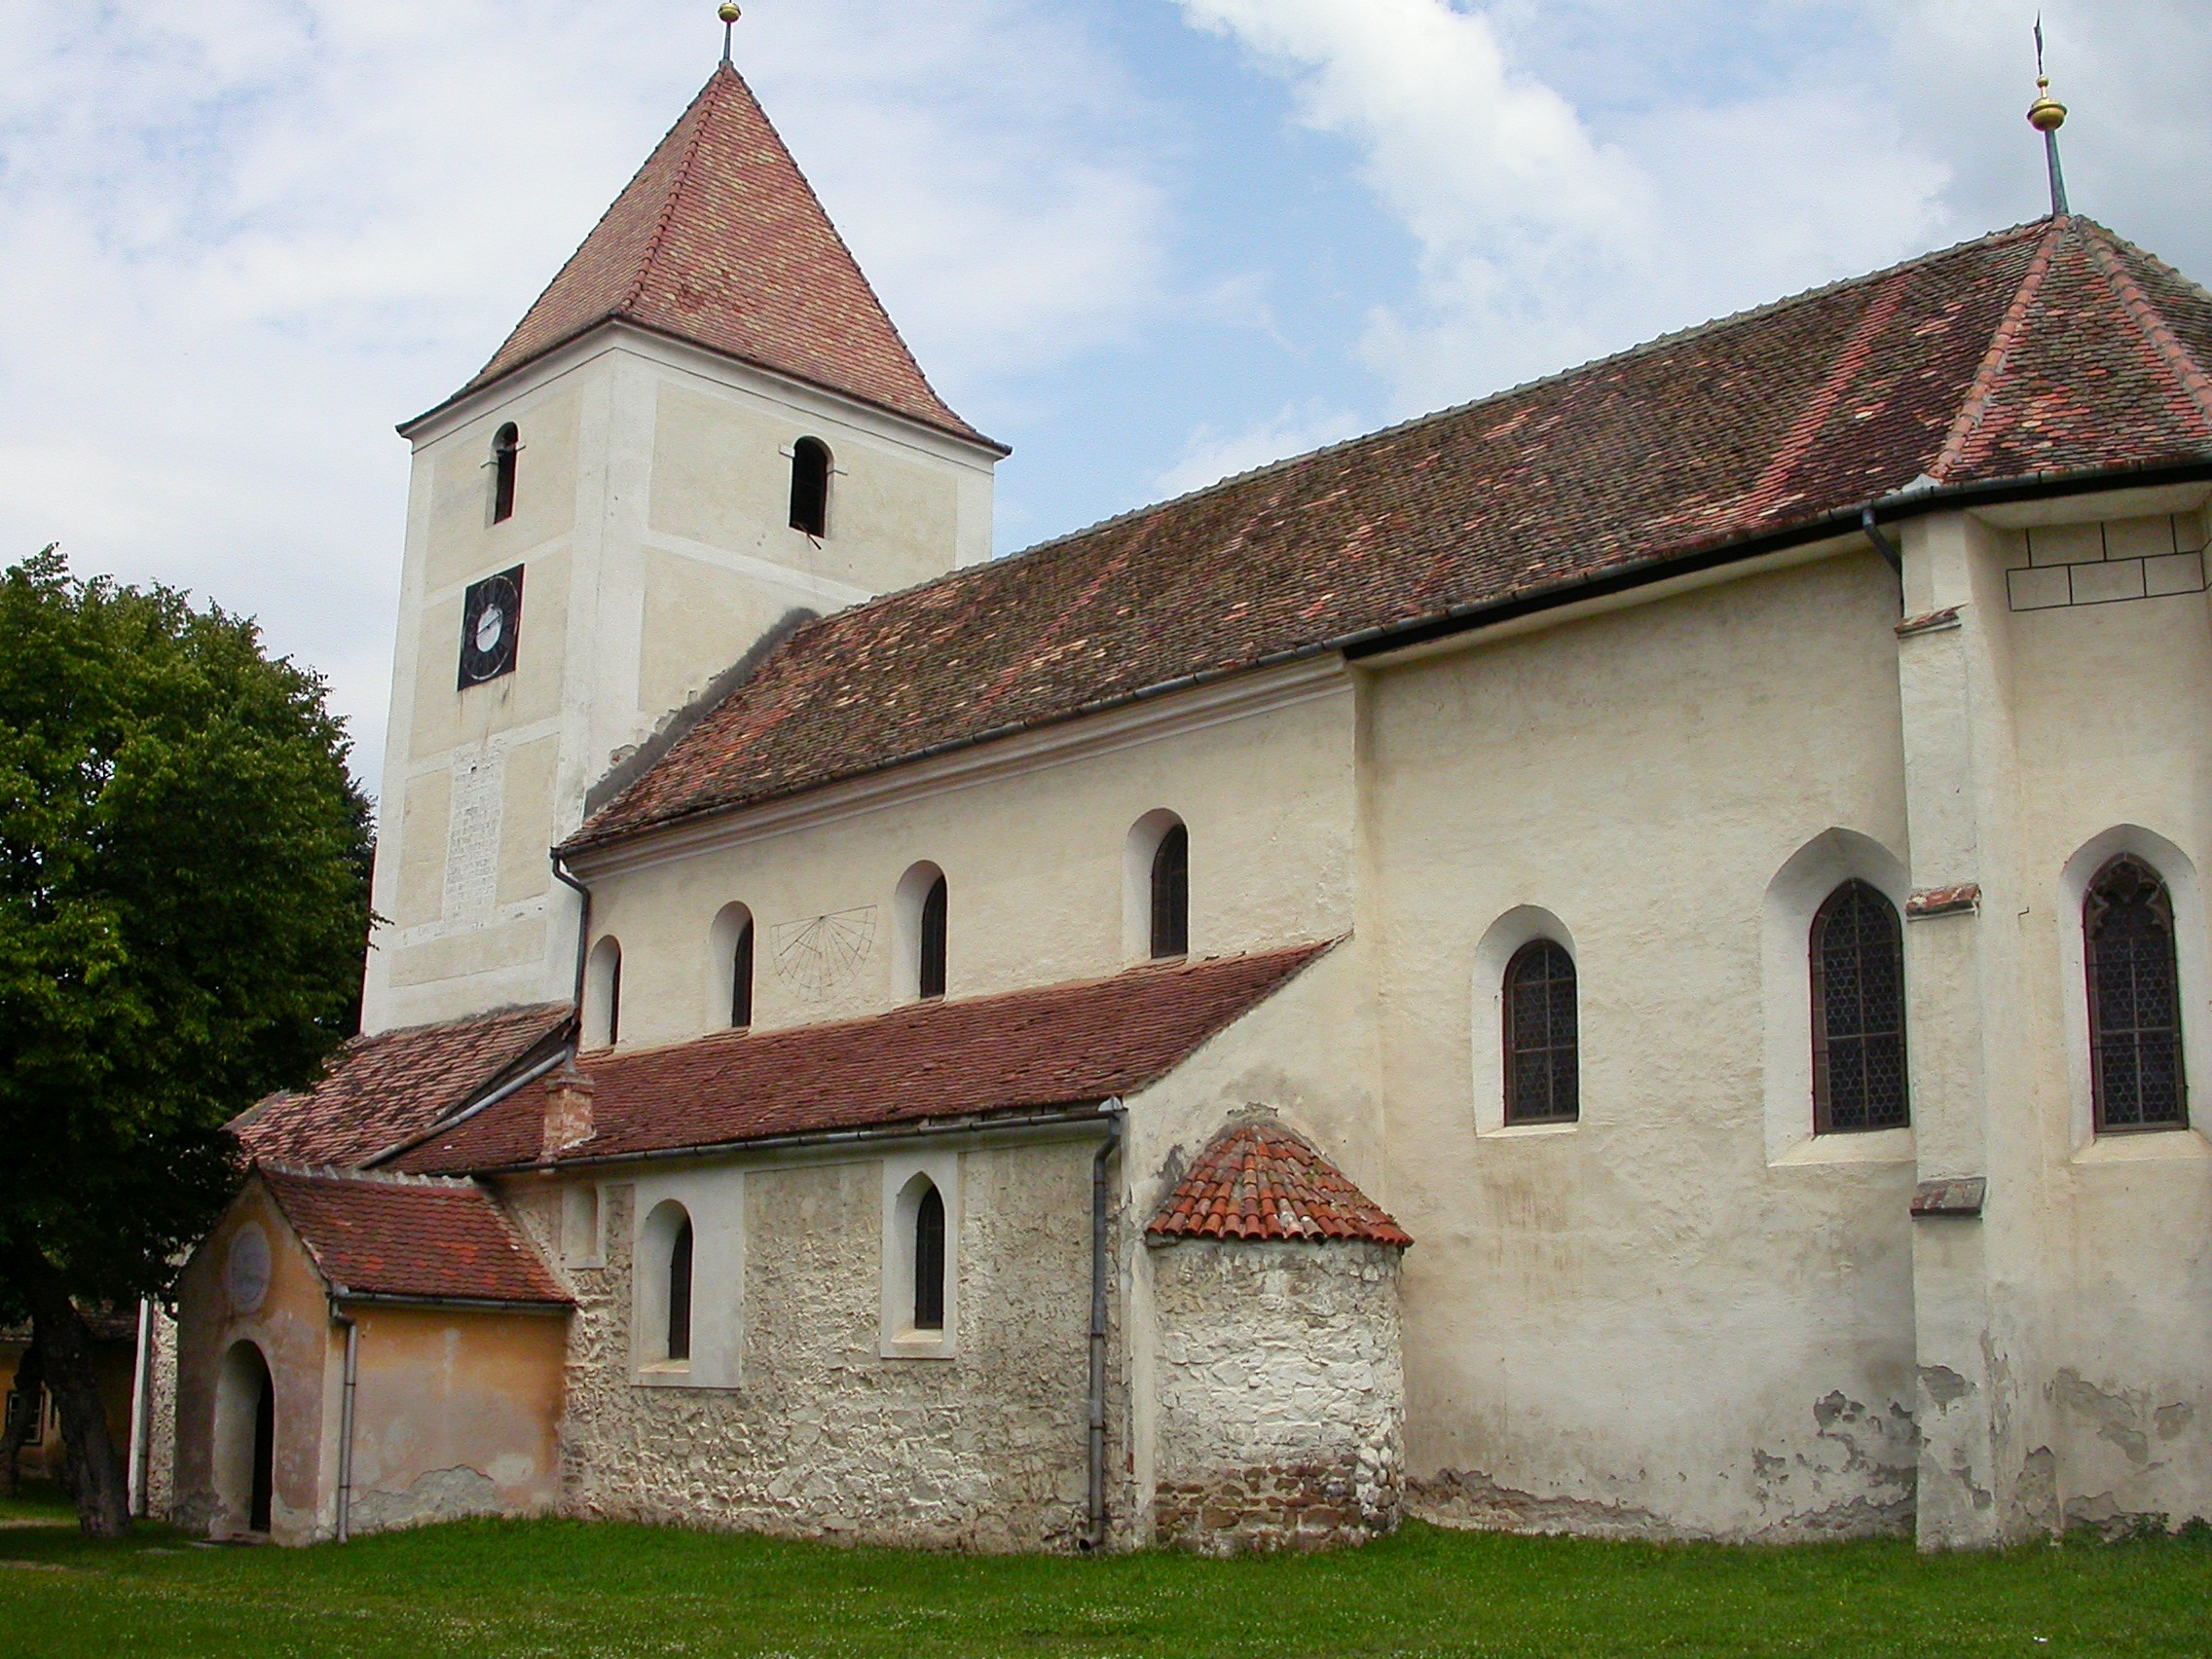 Die evangelische Kirche